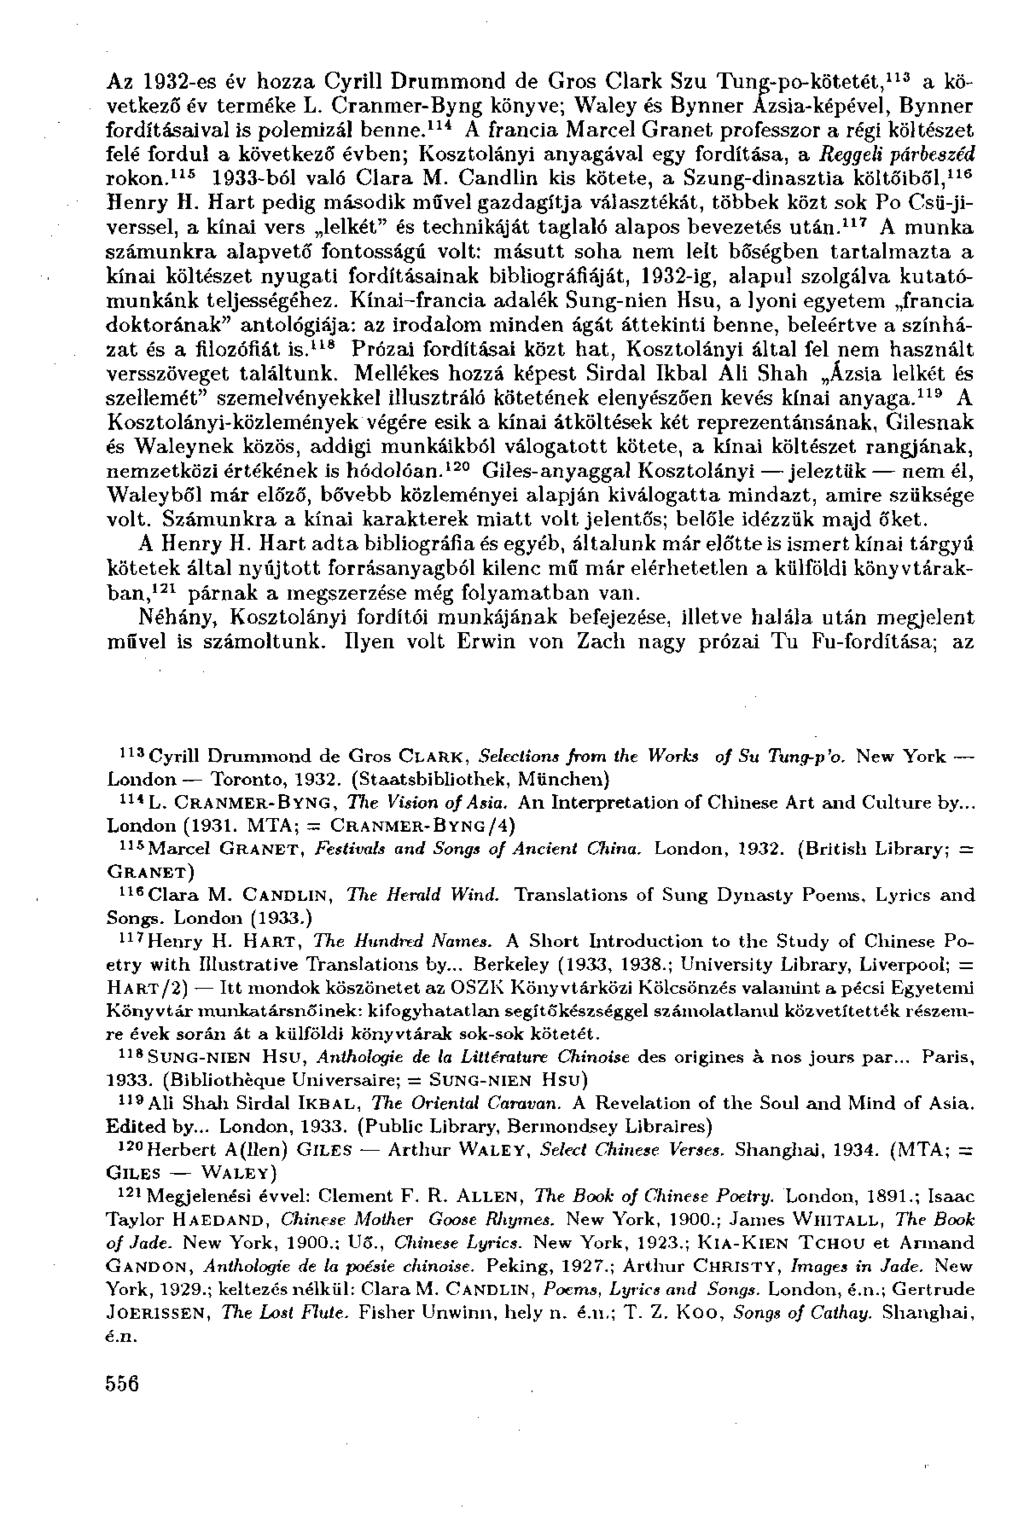 Az 1932-es év hozza Cyrill Drummond de Gros Clark Szu Tung-po-kötetét, 113 a következő év terméke L. Cranmer-Byng könyve; Waley és Bynner Ázsia-képé vei, Bynner fordításaival is polemizál benne.